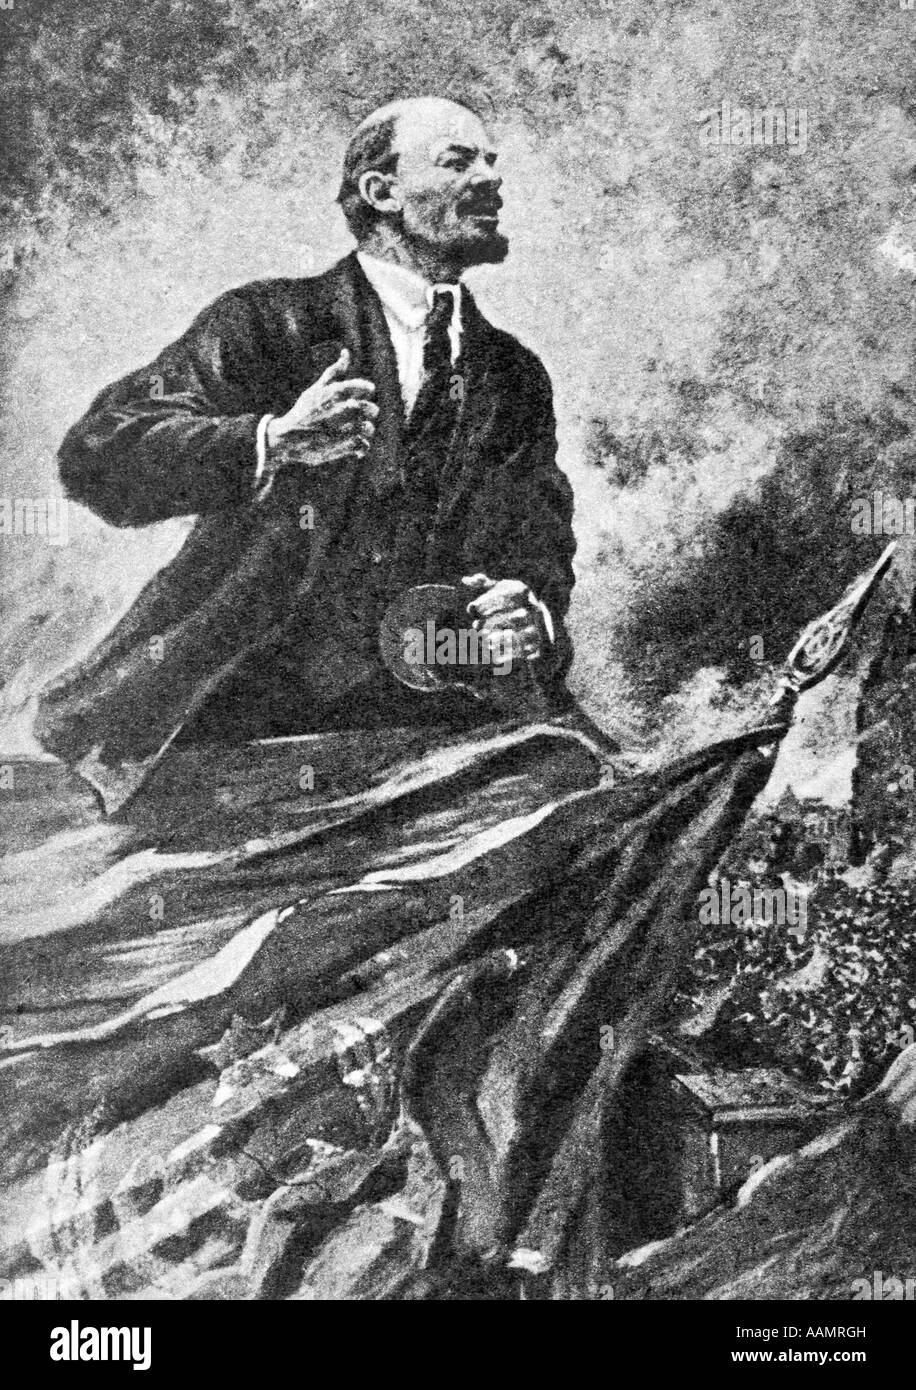 1910 Vladimir Ilitch Lénine NIKOLAI 1870-1924 LEADER BOLCHEVIQUE RÉVOLUTION RUSSE RUSSIE URSS 1917 TYPE AFFICHE PORTRAIT DRAMATIQUE Banque D'Images